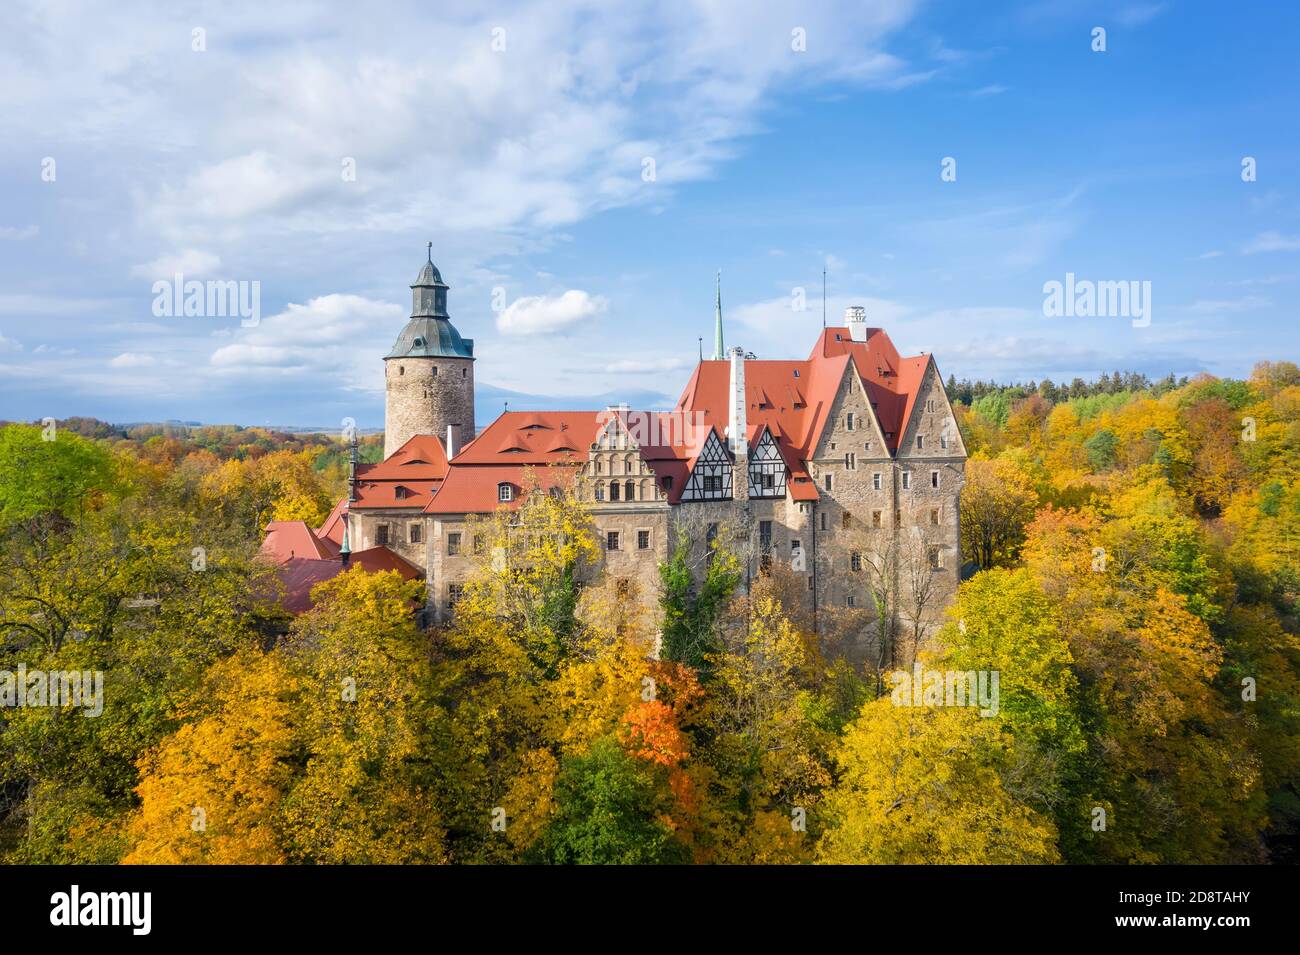 Vista aérea del Castillo de Czocha rodeado de árboles amarillos otoñales, Polonia Foto de stock